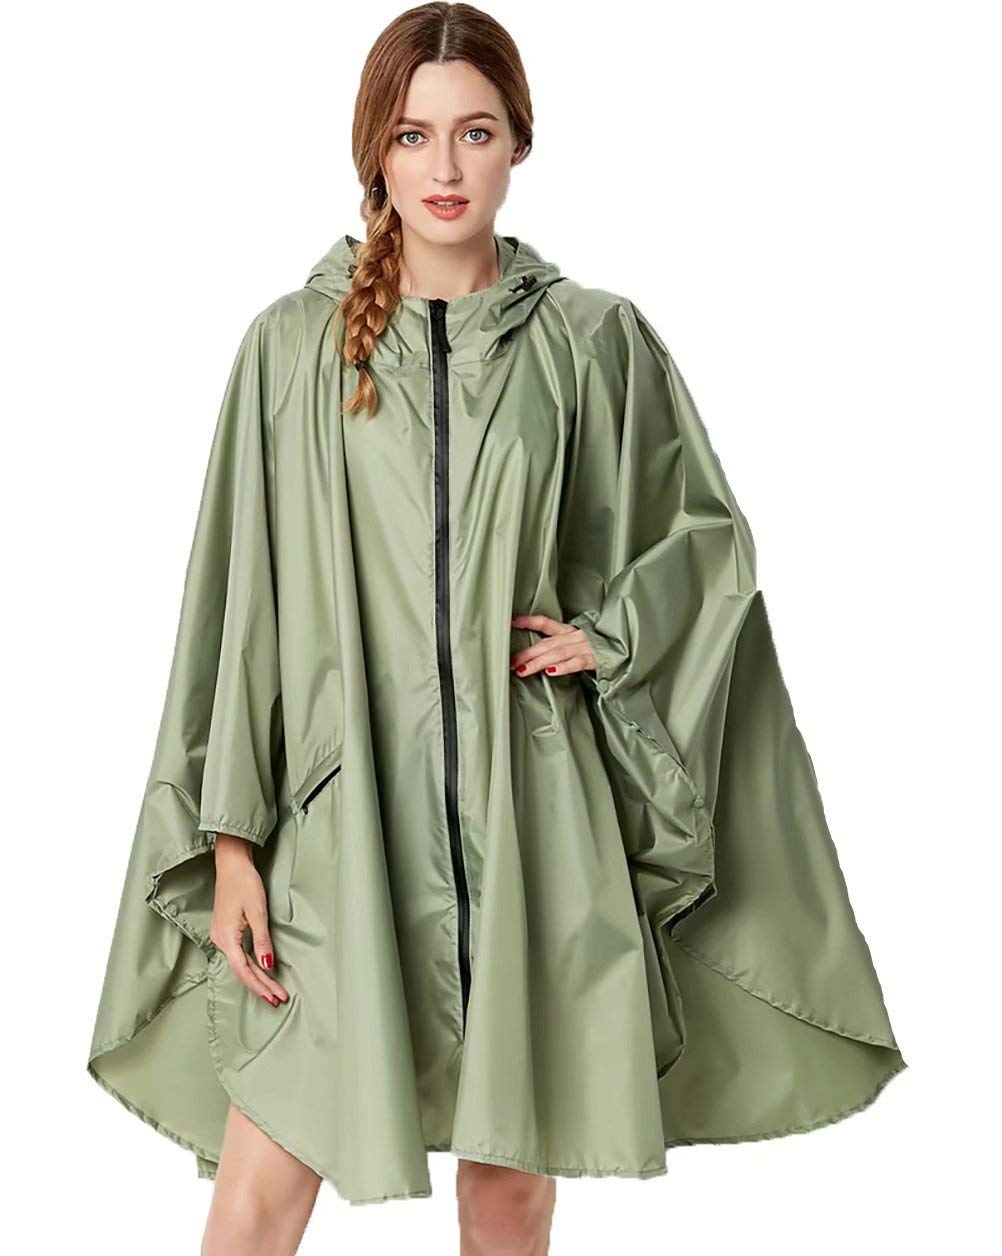 NUUR Damen Regenponcho Regenmantel Unisex Regenjacke Wasserdicht Regencape Wiederverwendbar mit Kapuze Grün